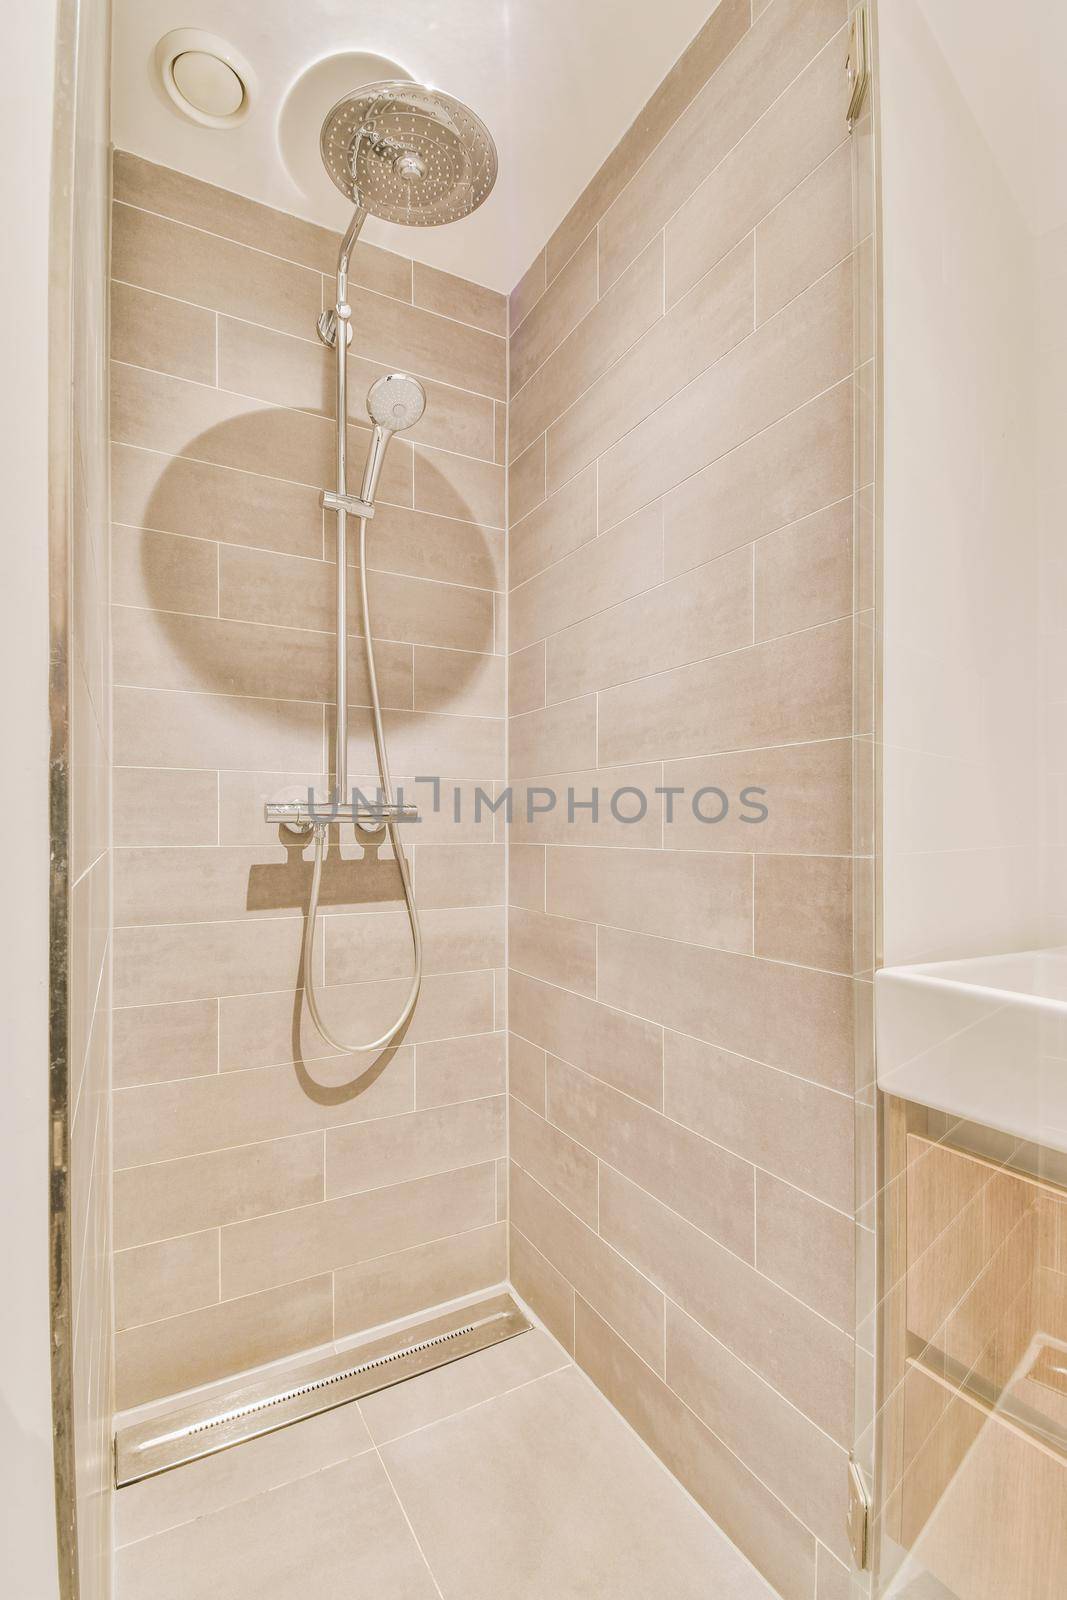 Shower box in modern bathroom by casamedia